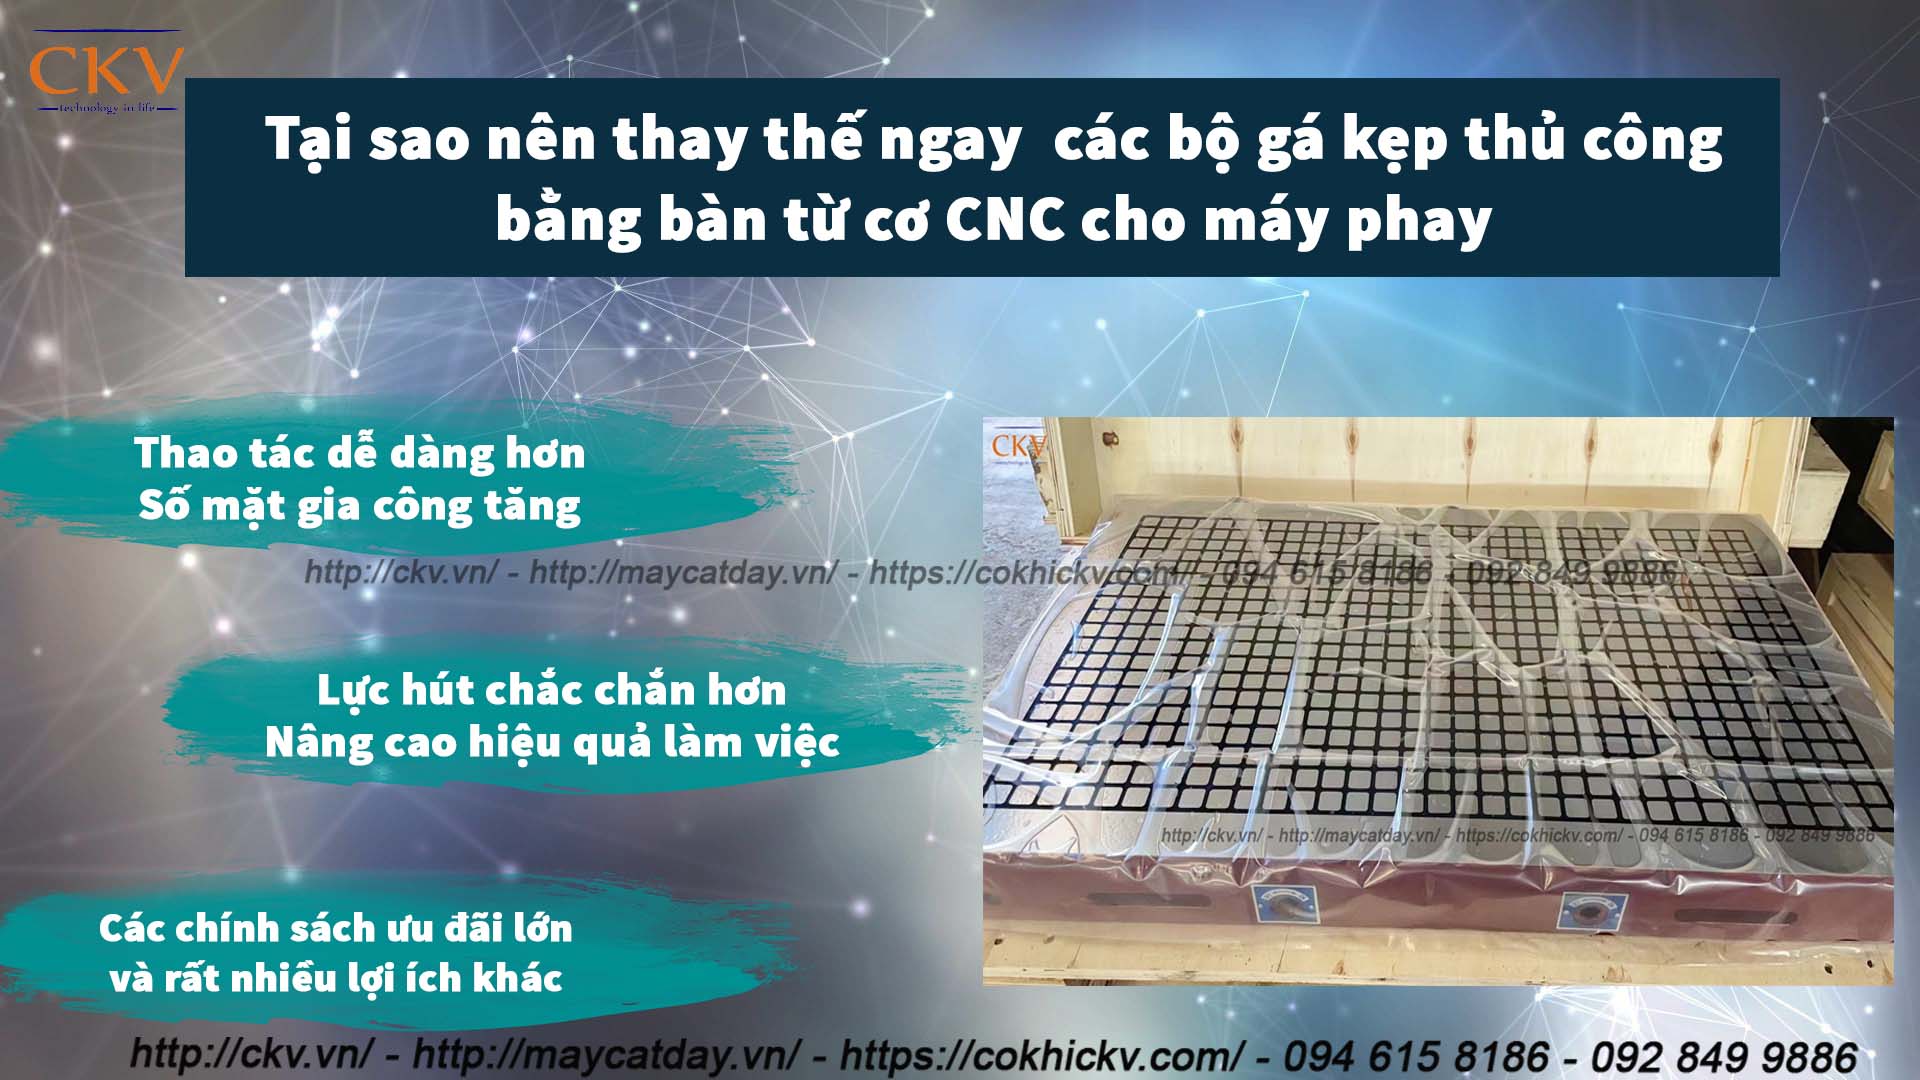 Mua bàn từ cơ CNC giá rẻ chất lượng cao tại Hà Nội